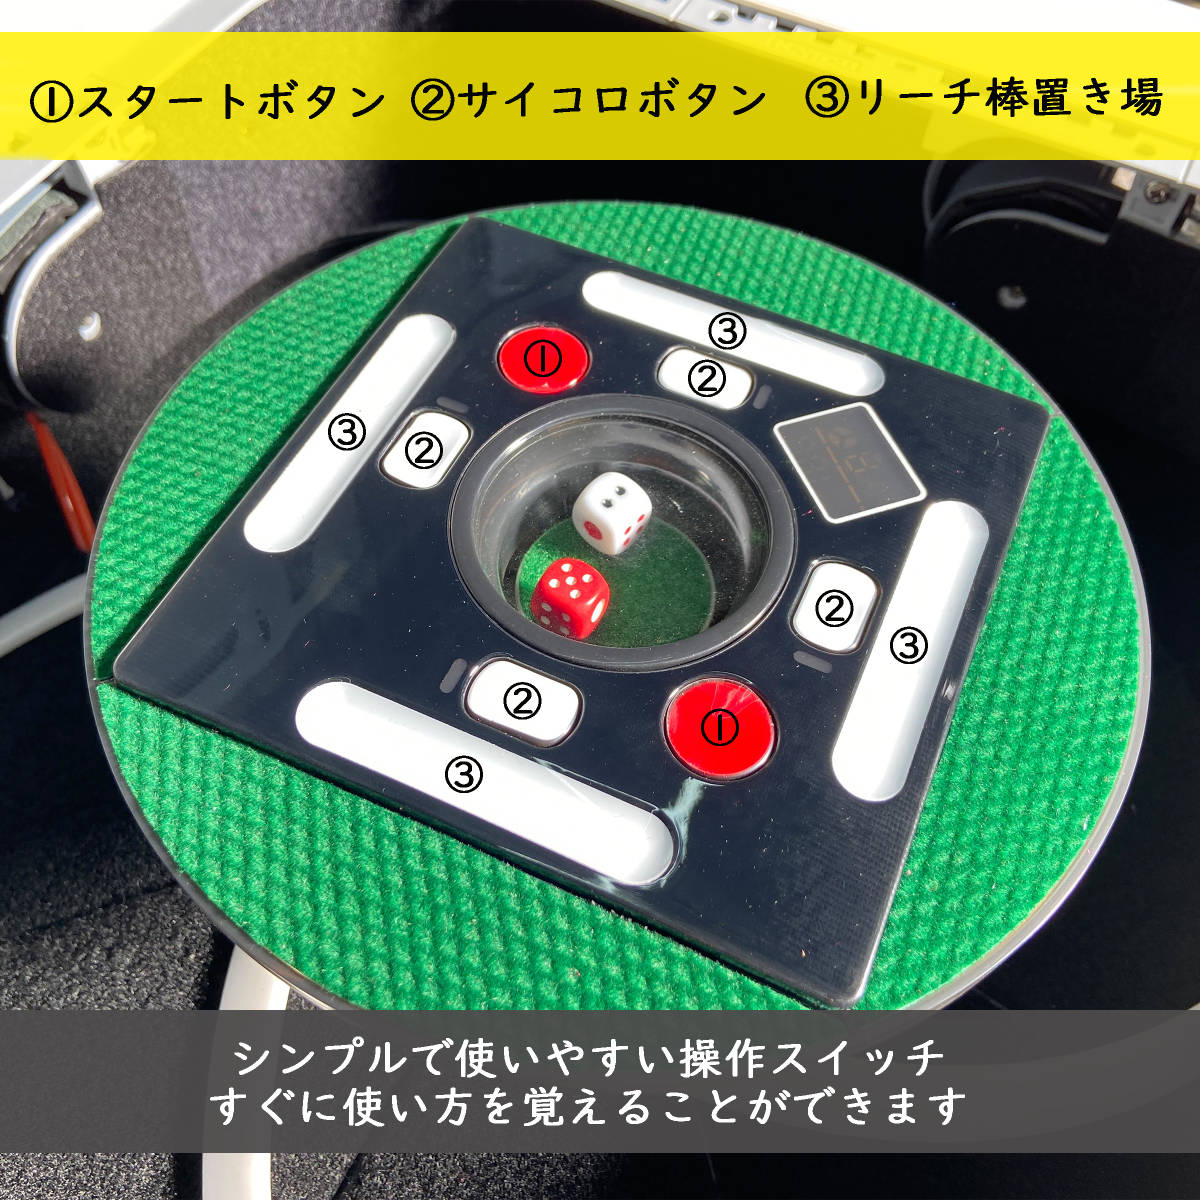 新品 座卓 全自動麻雀卓 JPチョイス 緑マット 28mm 静音タイプ 日本